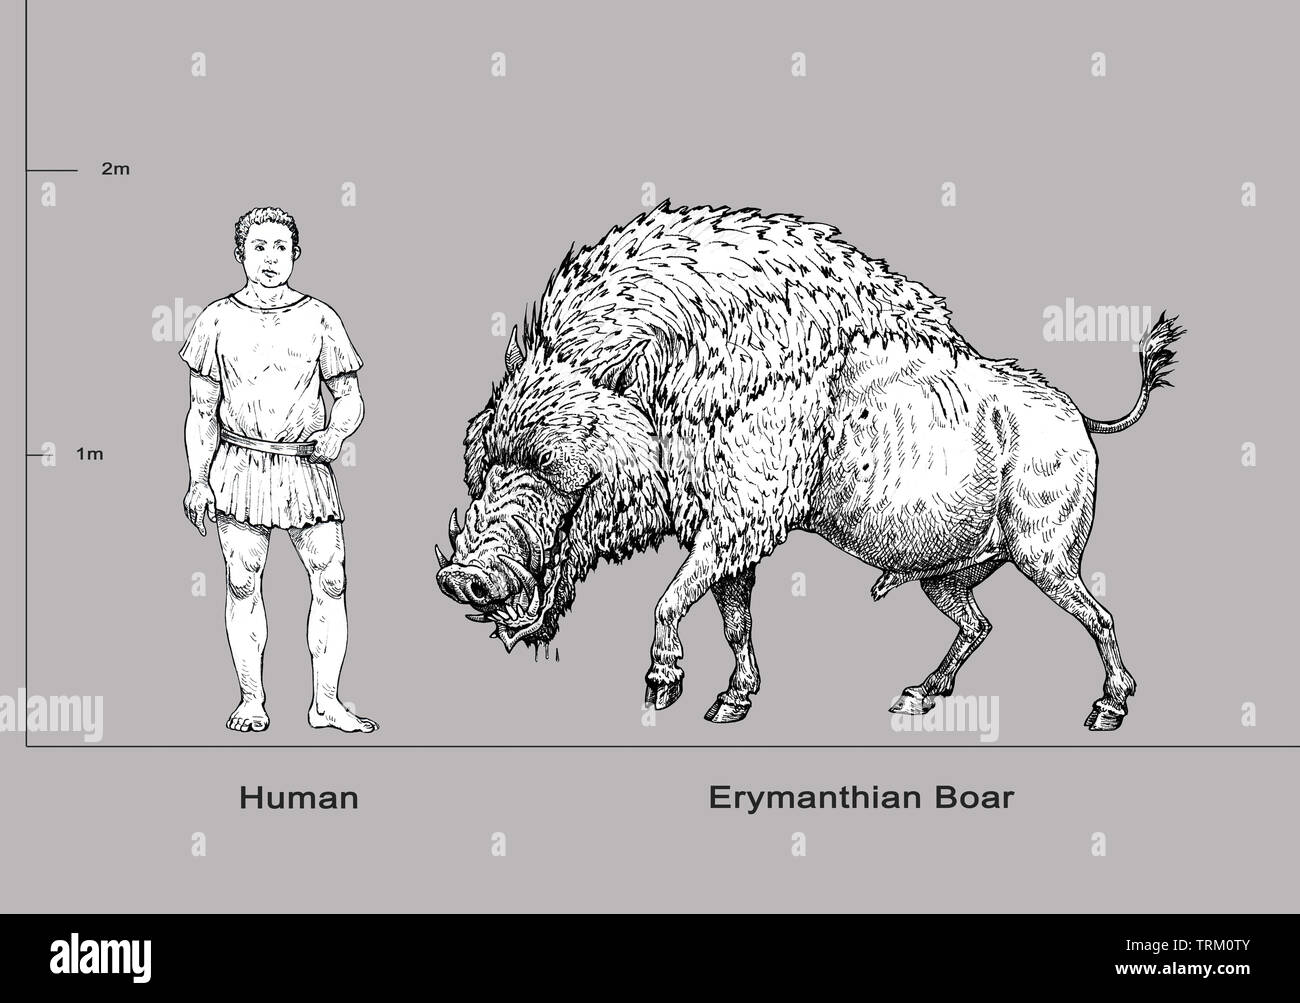 Illustration de Monster. Erymanthian sanglier et anatomie humaine comparaison. Dessin de fantaisie. Banque D'Images